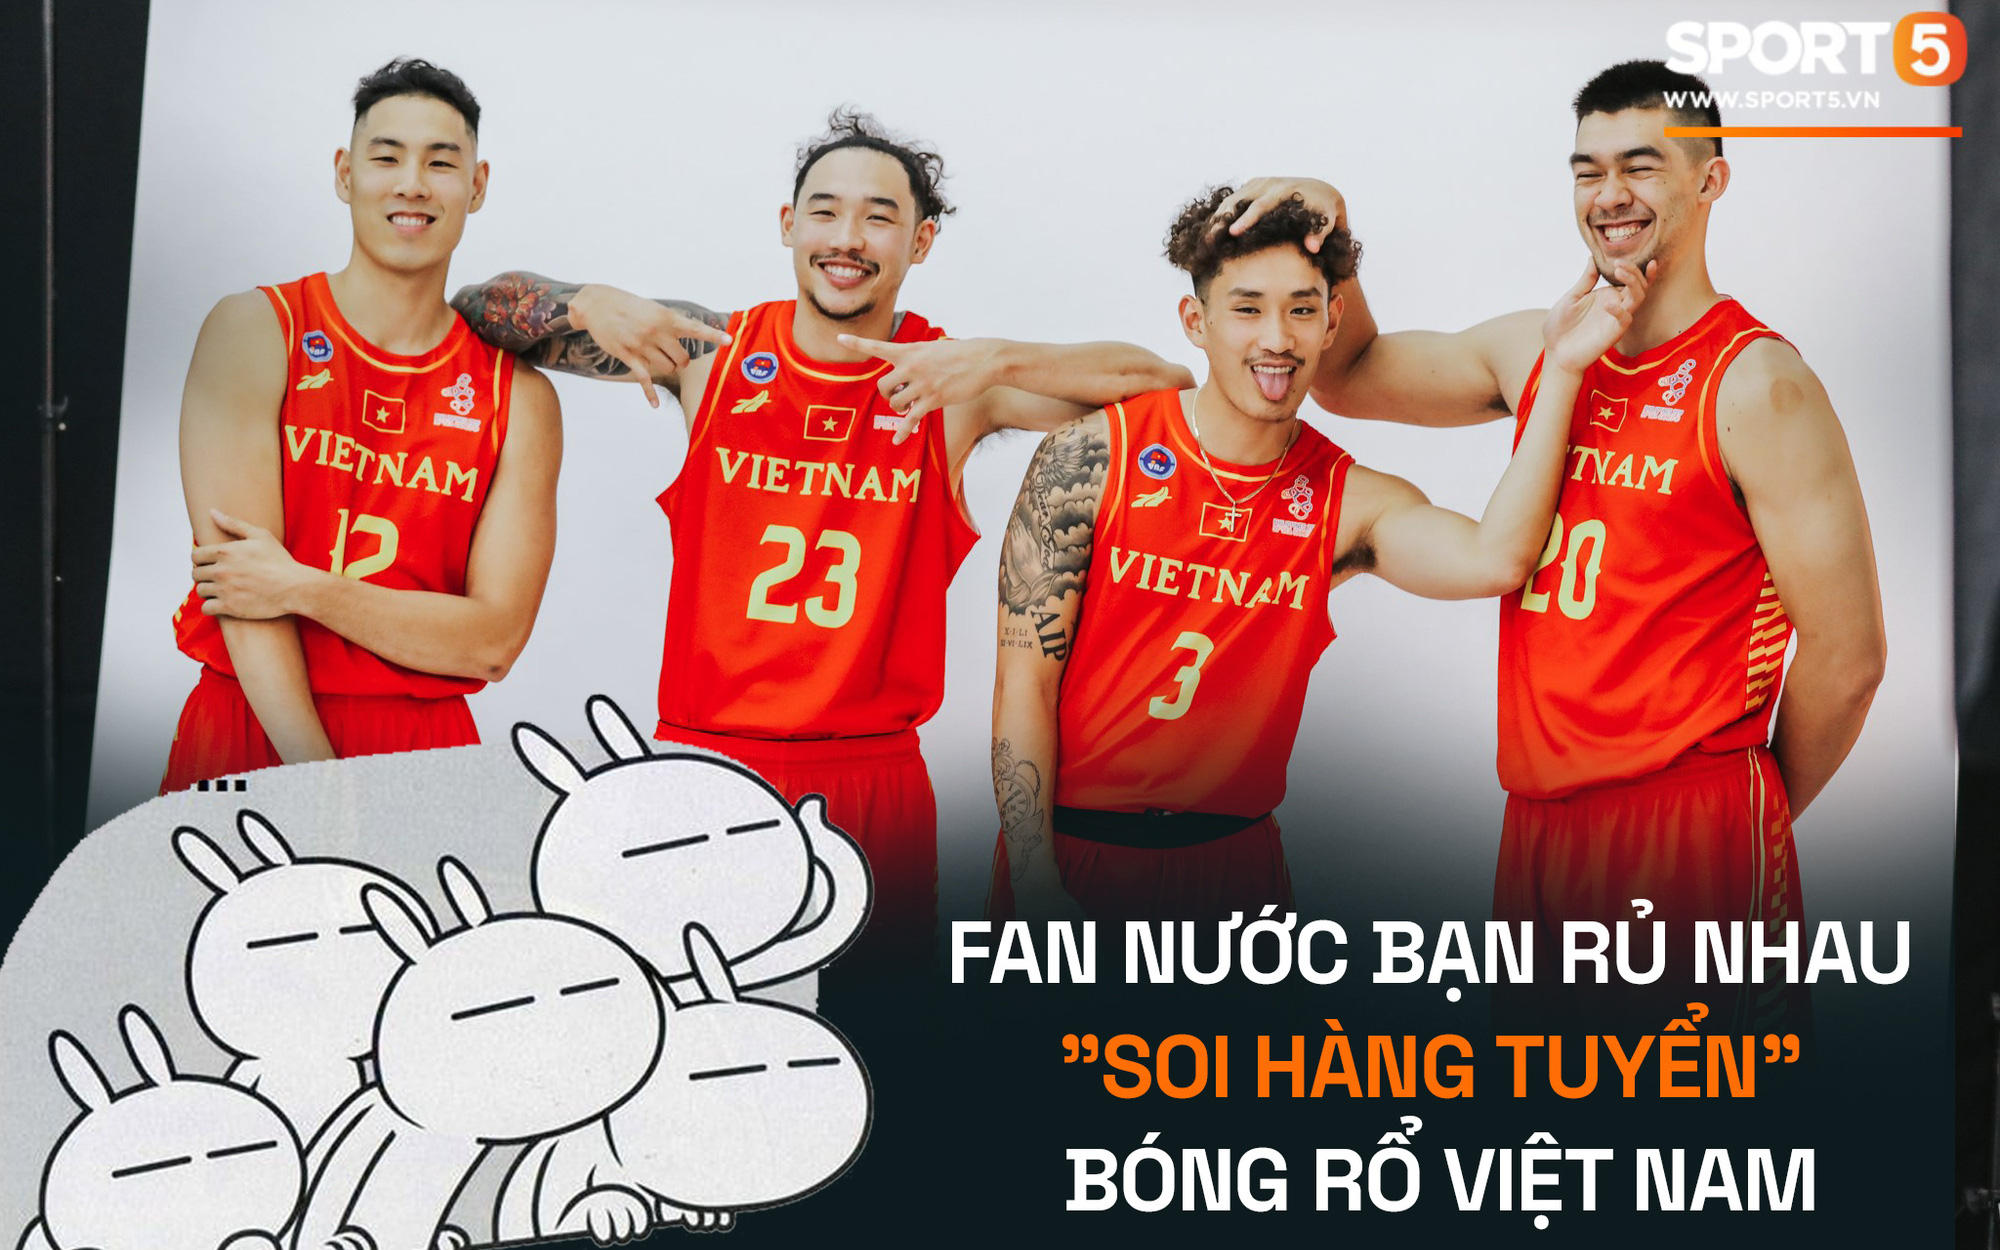 Tuyển bóng rổ vừa tung danh sách tập huấn, fan nước bạn rủ nhau "soi hàng tuyển" đội hình Việt Nam